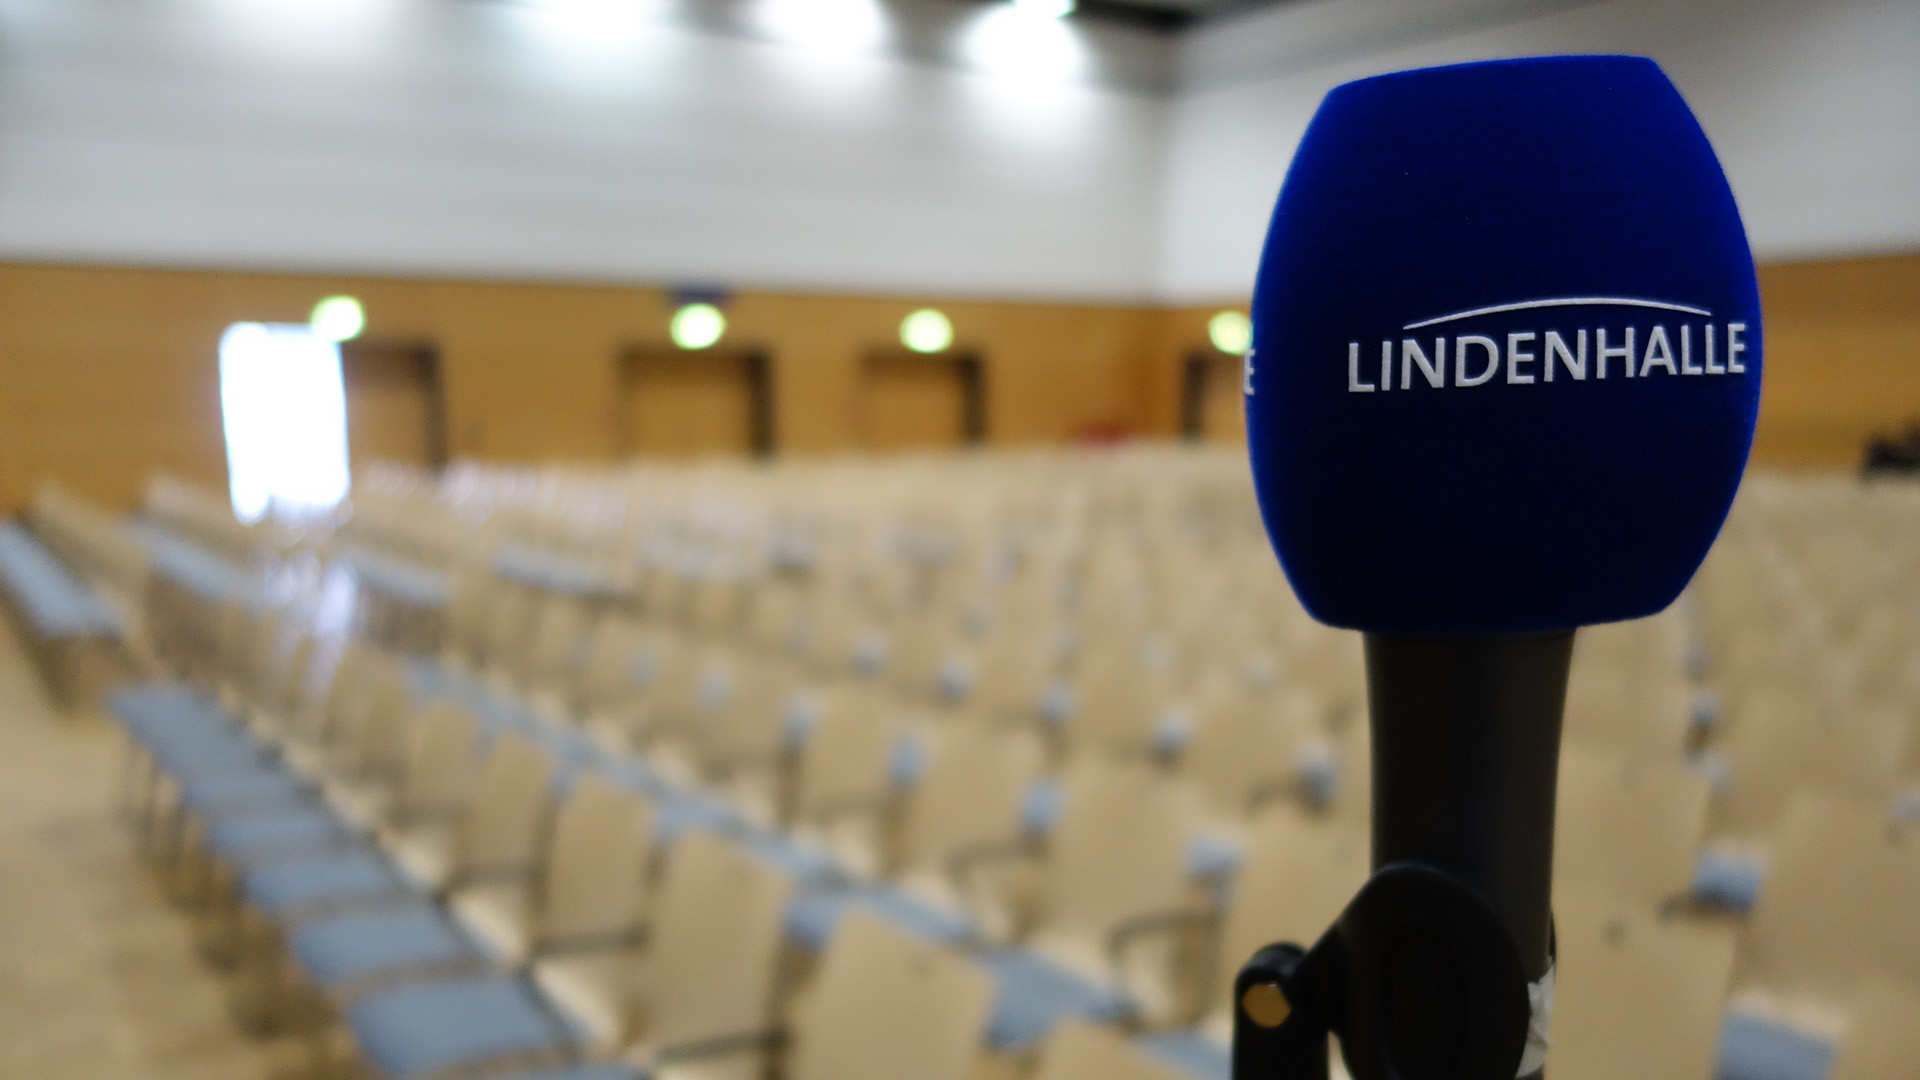 Eine blaues Mikrofon mit der Aufschrift "Lindenhalle". Im Hintergrund sind schemenhaft viele Stuhlreihen zu erkennen.